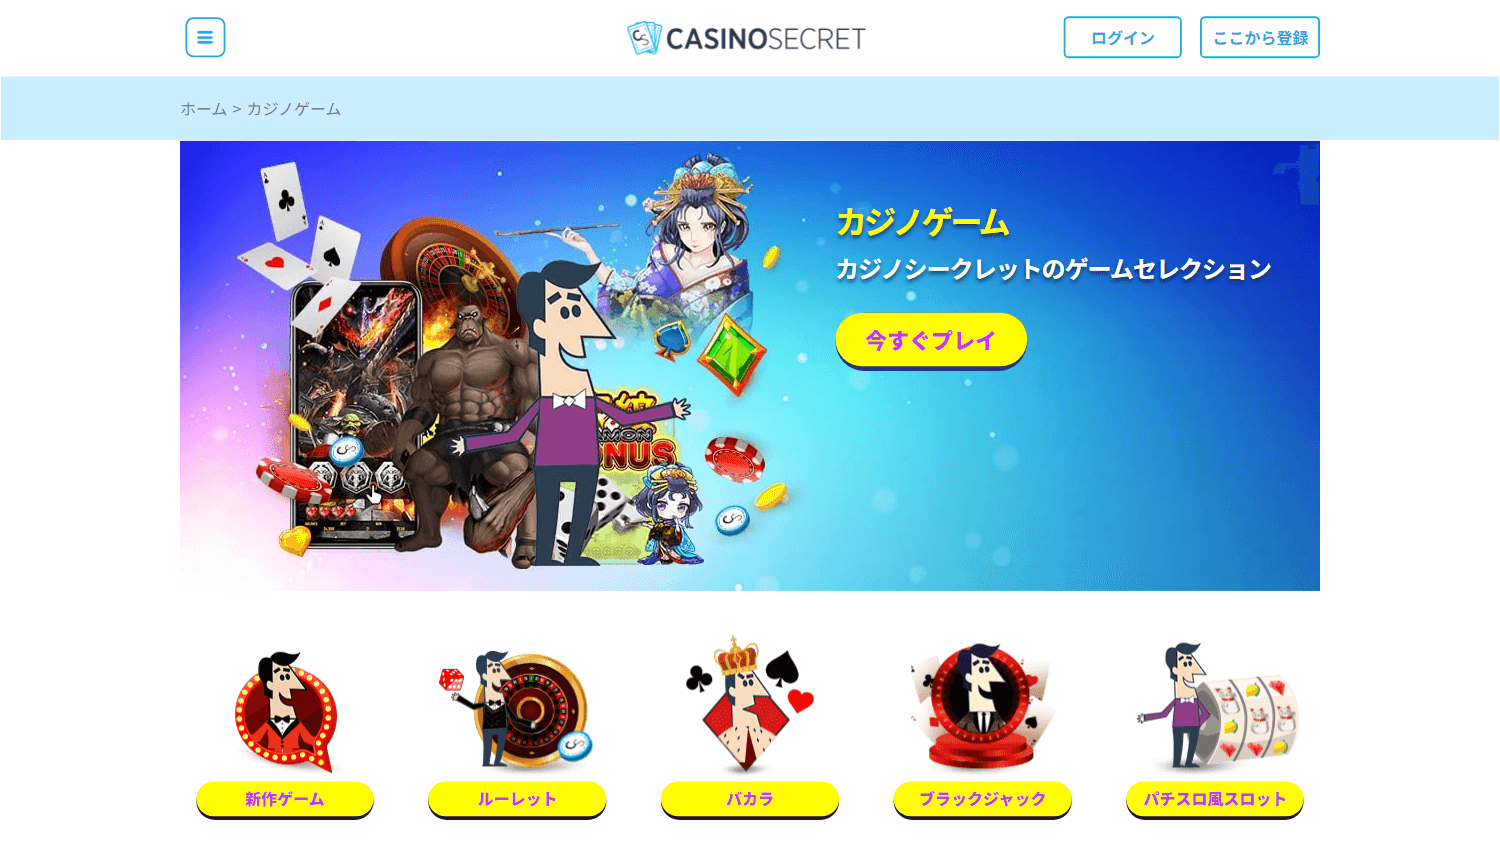 casinosecret_game_gallery_desktop